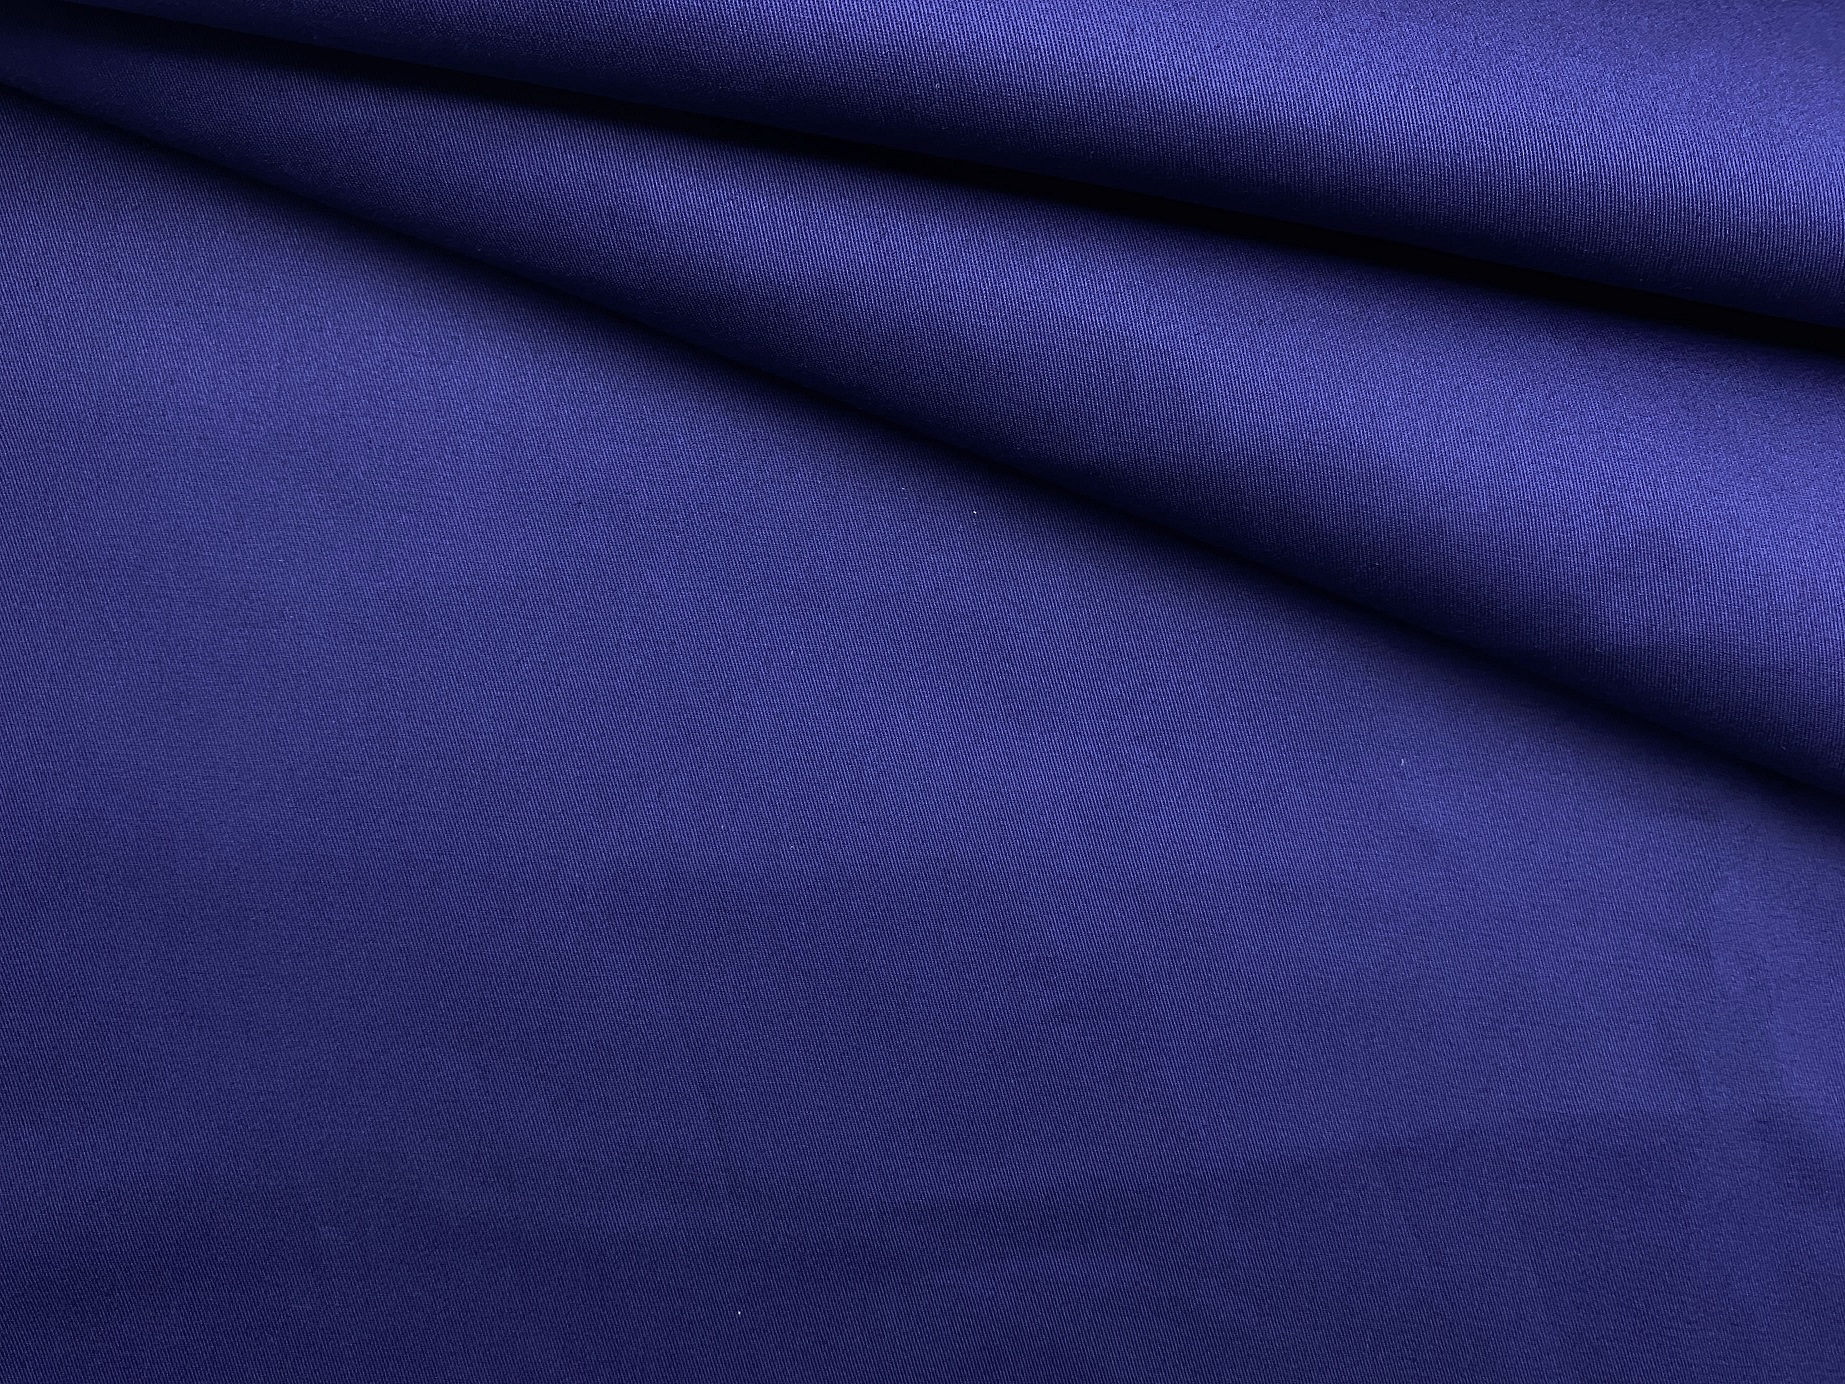 Ткань Хлопок сине-фиолетового цвета однотонная 16846 1